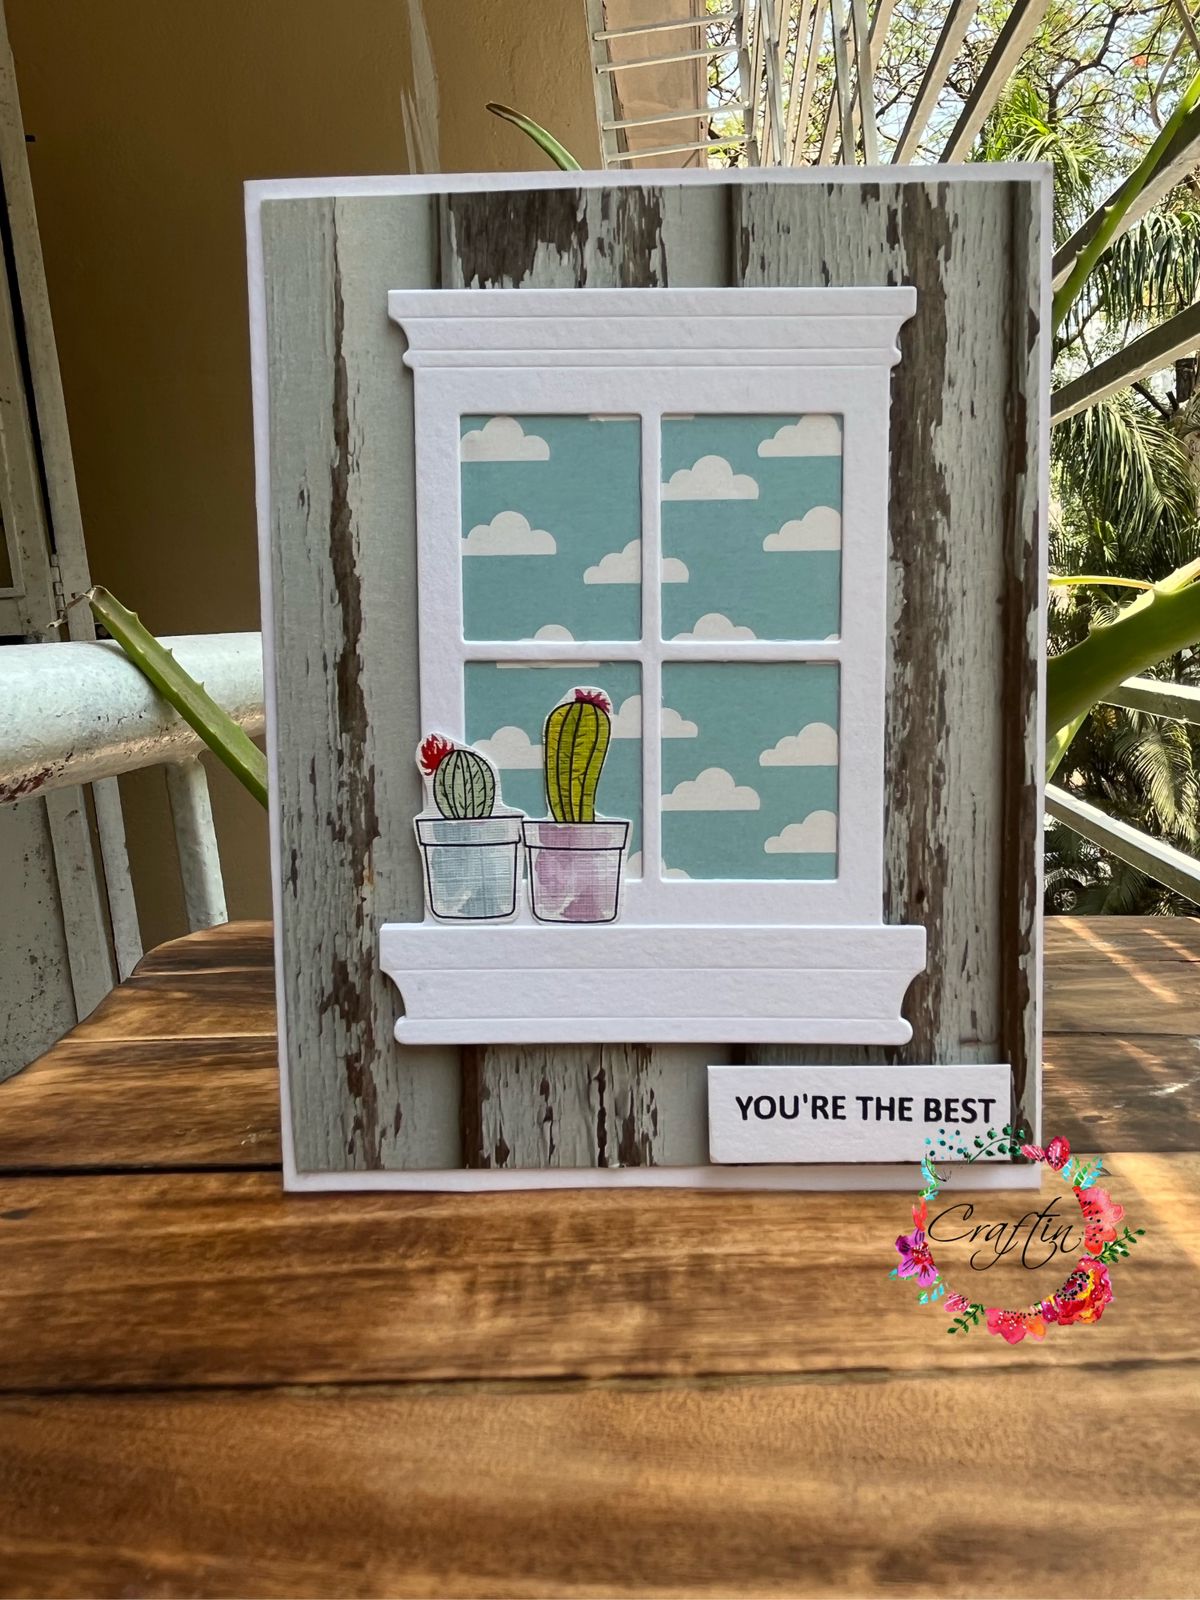 Cute Greeting Card You make my heart bloom Craftin